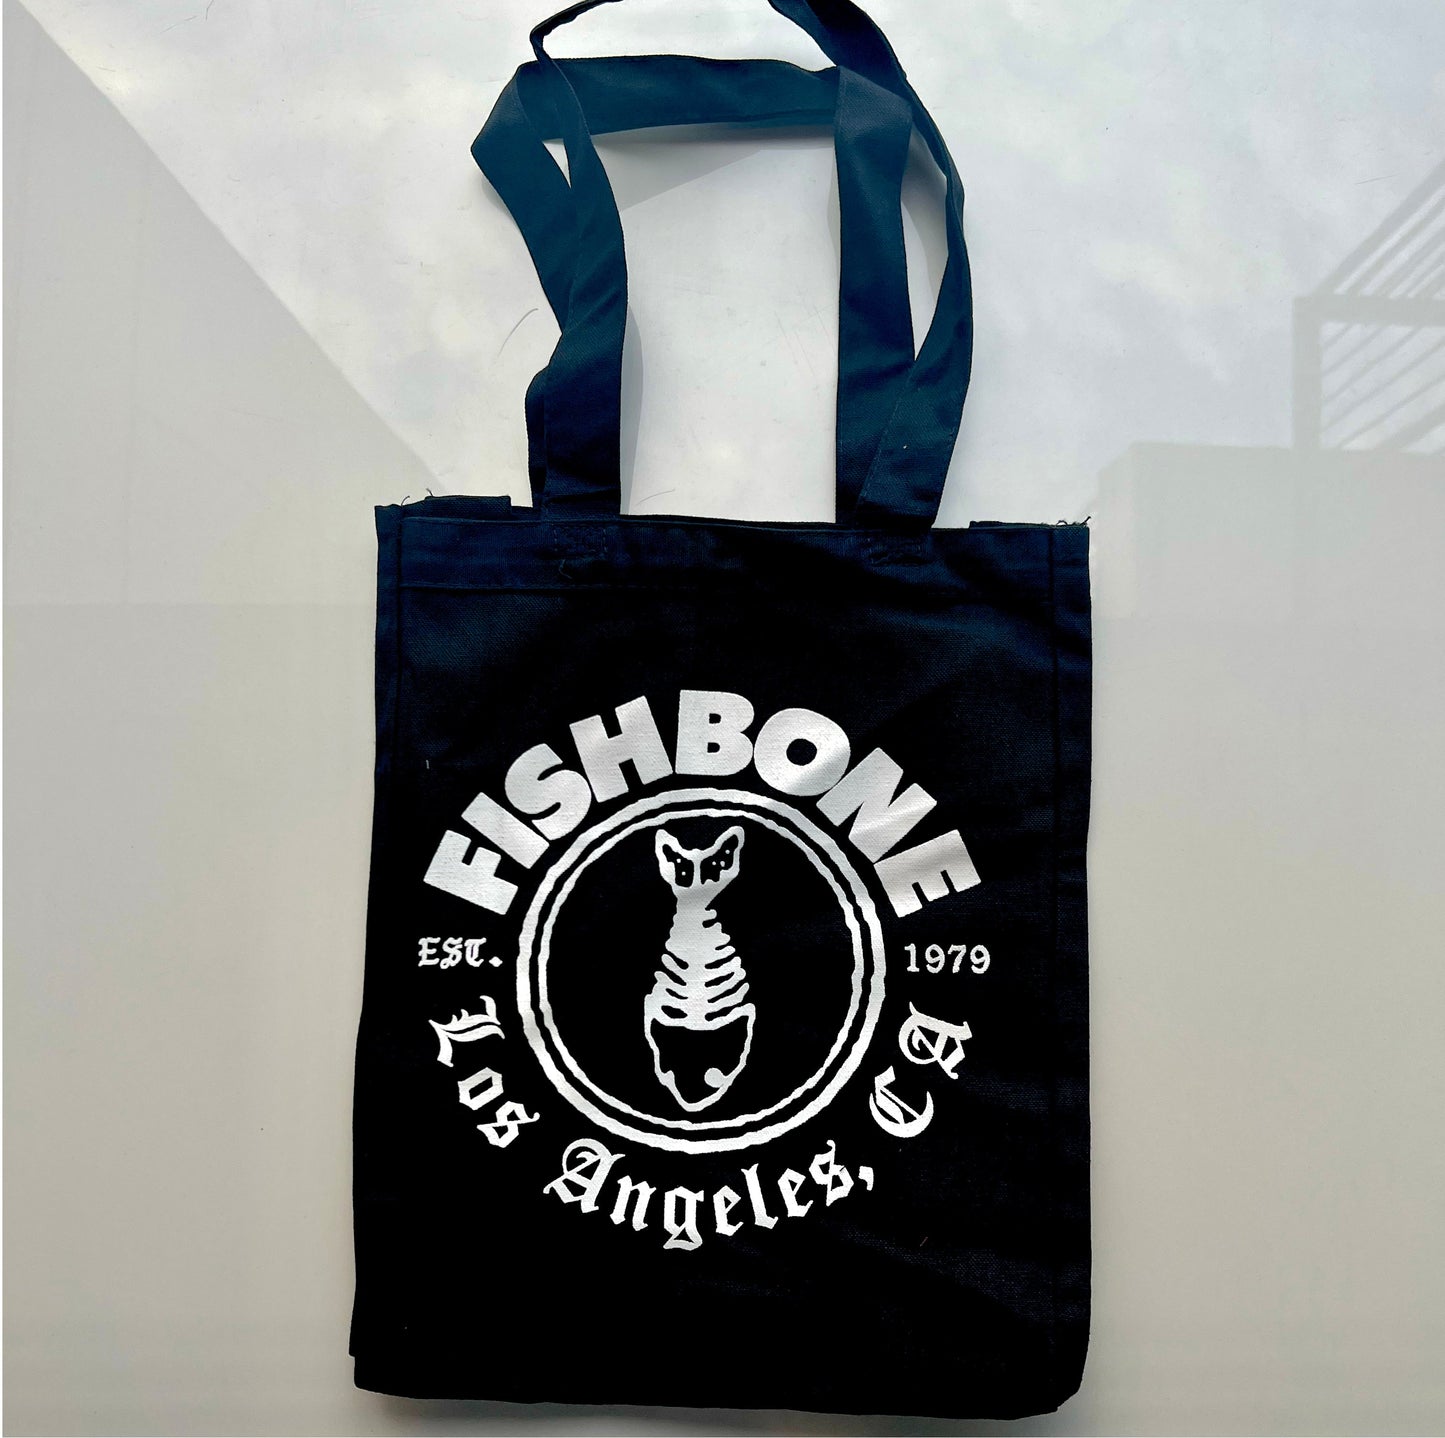 Fishbone - Tote Bag